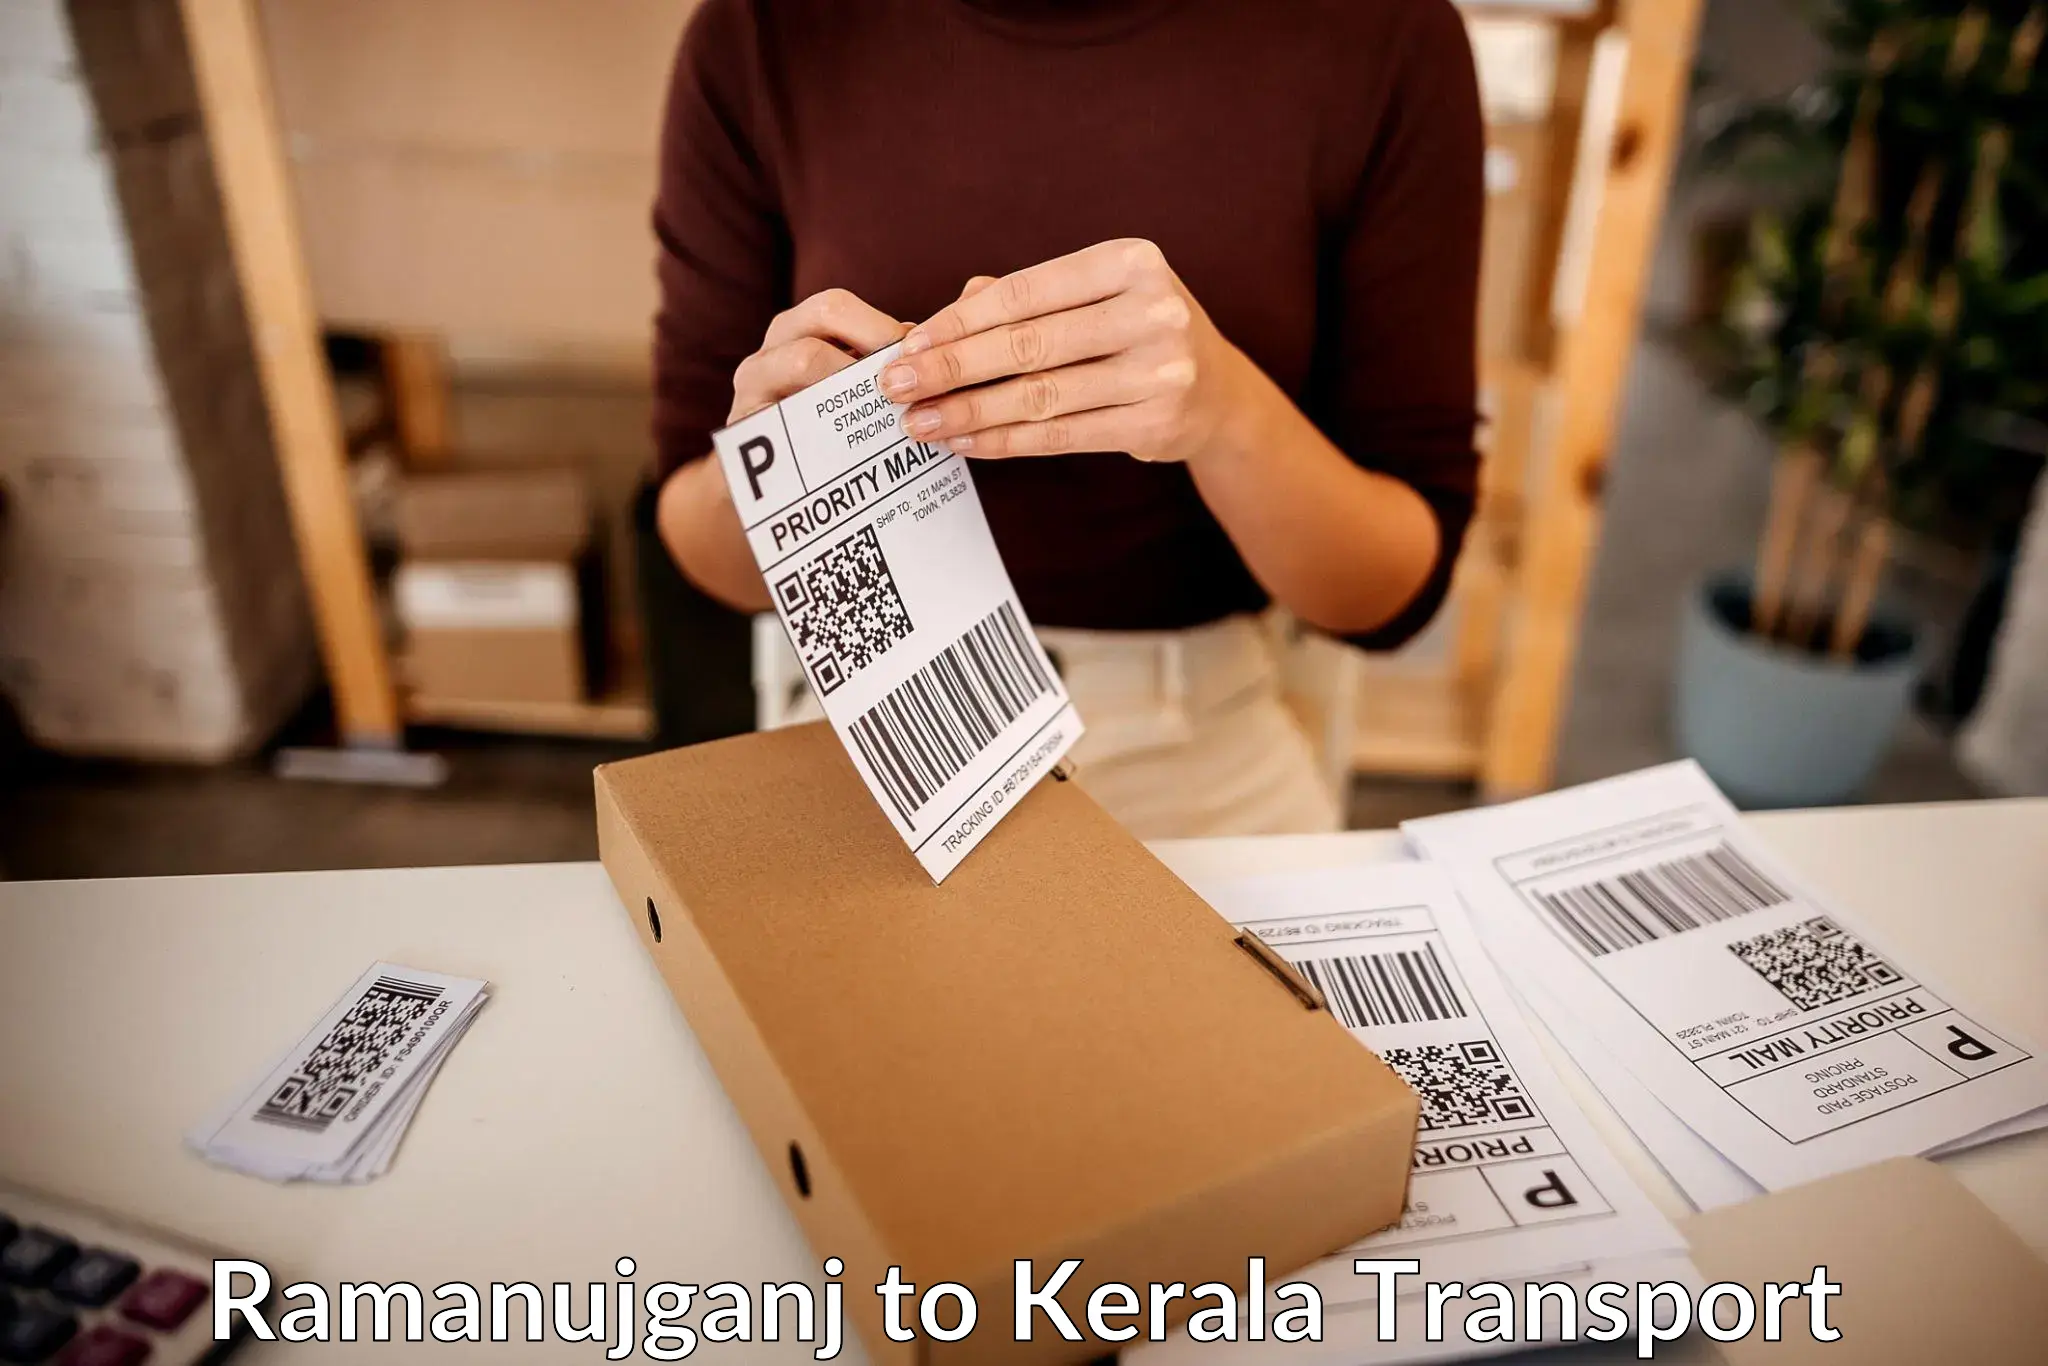 Cargo transport services Ramanujganj to Munnar